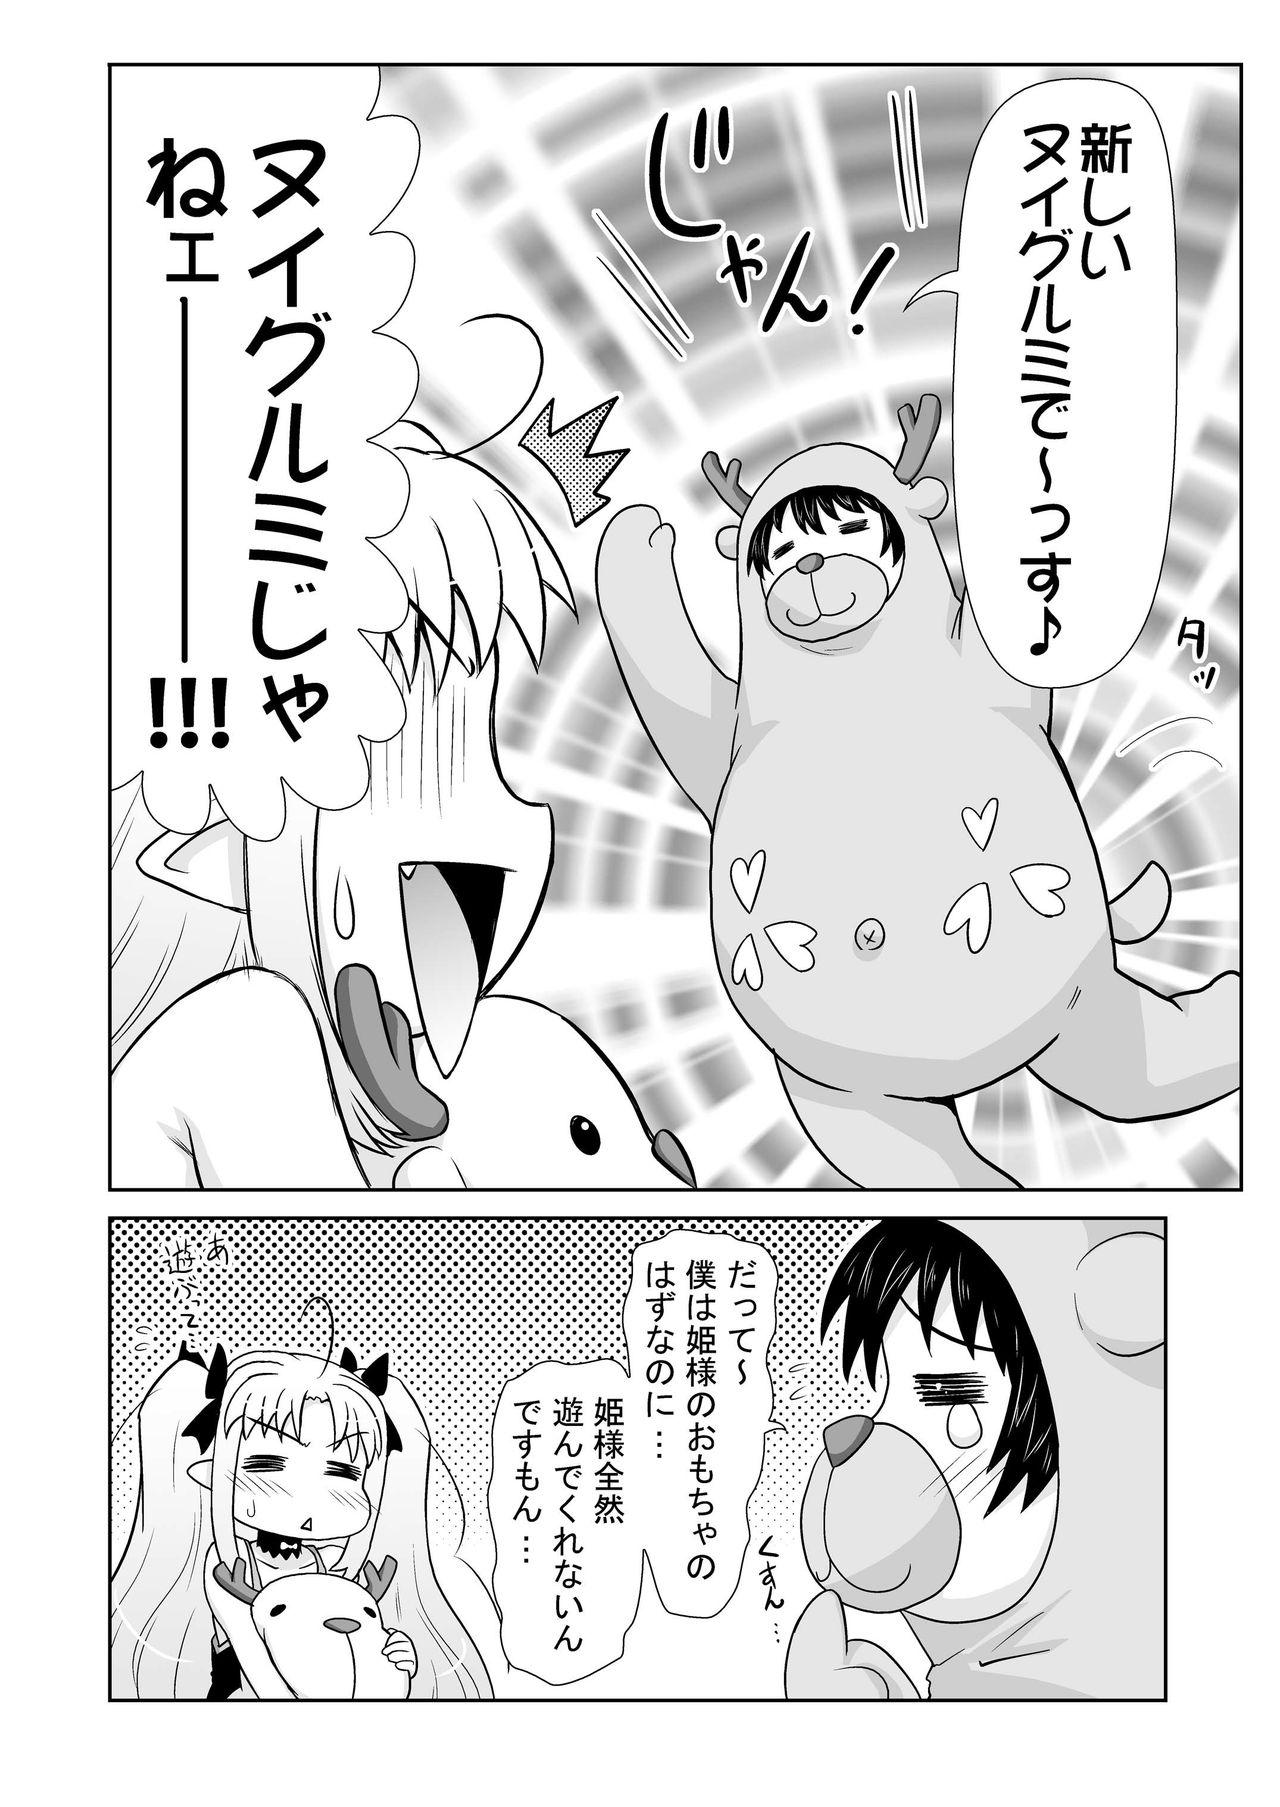 Cute Boku wa Lotte-sama no Omocha desu ga, Nani ka? - Lotte no omocha Negao - Page 6